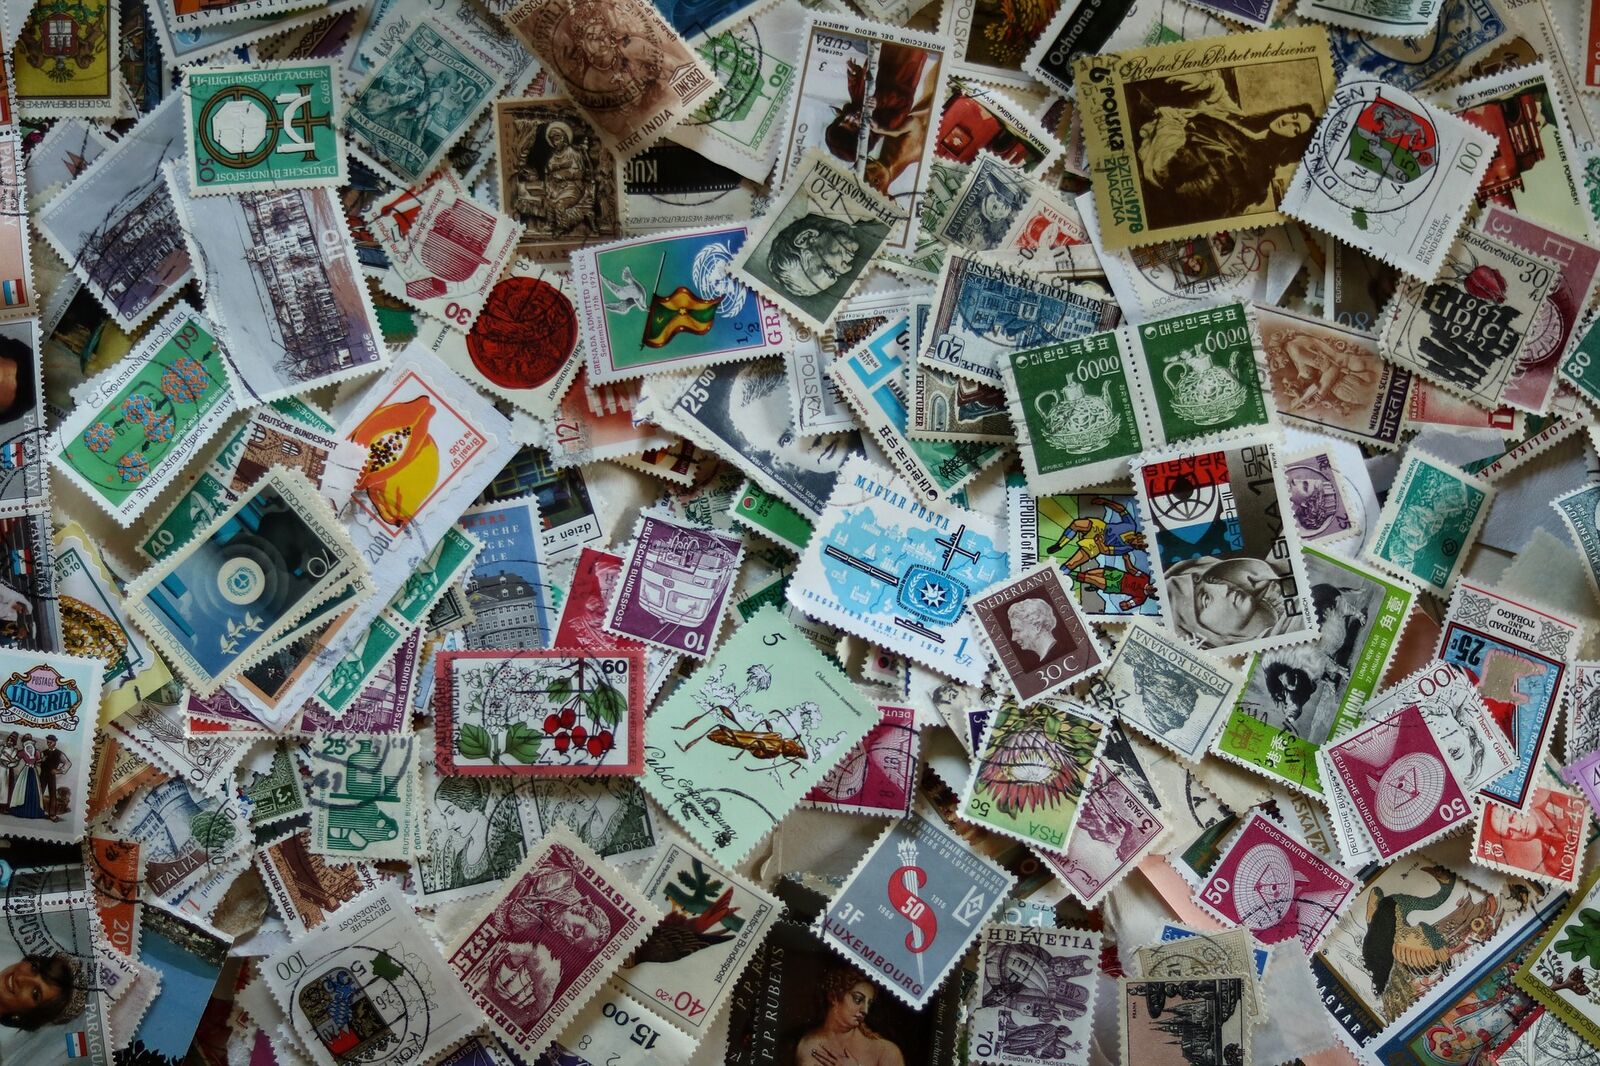 Briefmarkenspende - Sammeln für den guten Zweck!